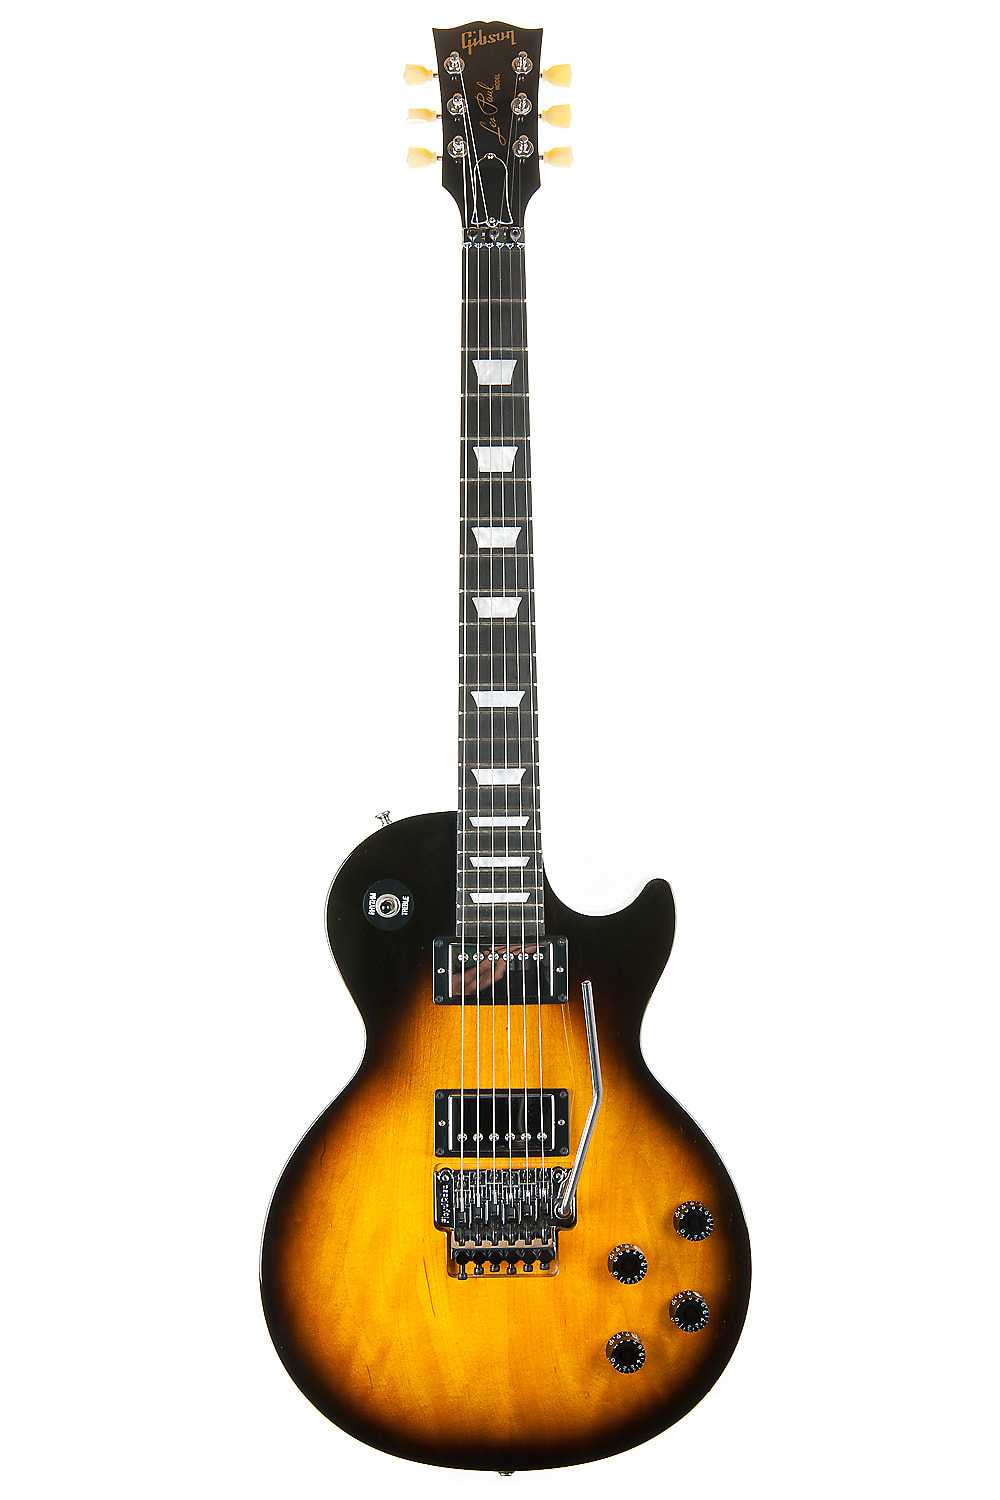 Gibson Les Paul Studio Shred 2012 | Reverb UK